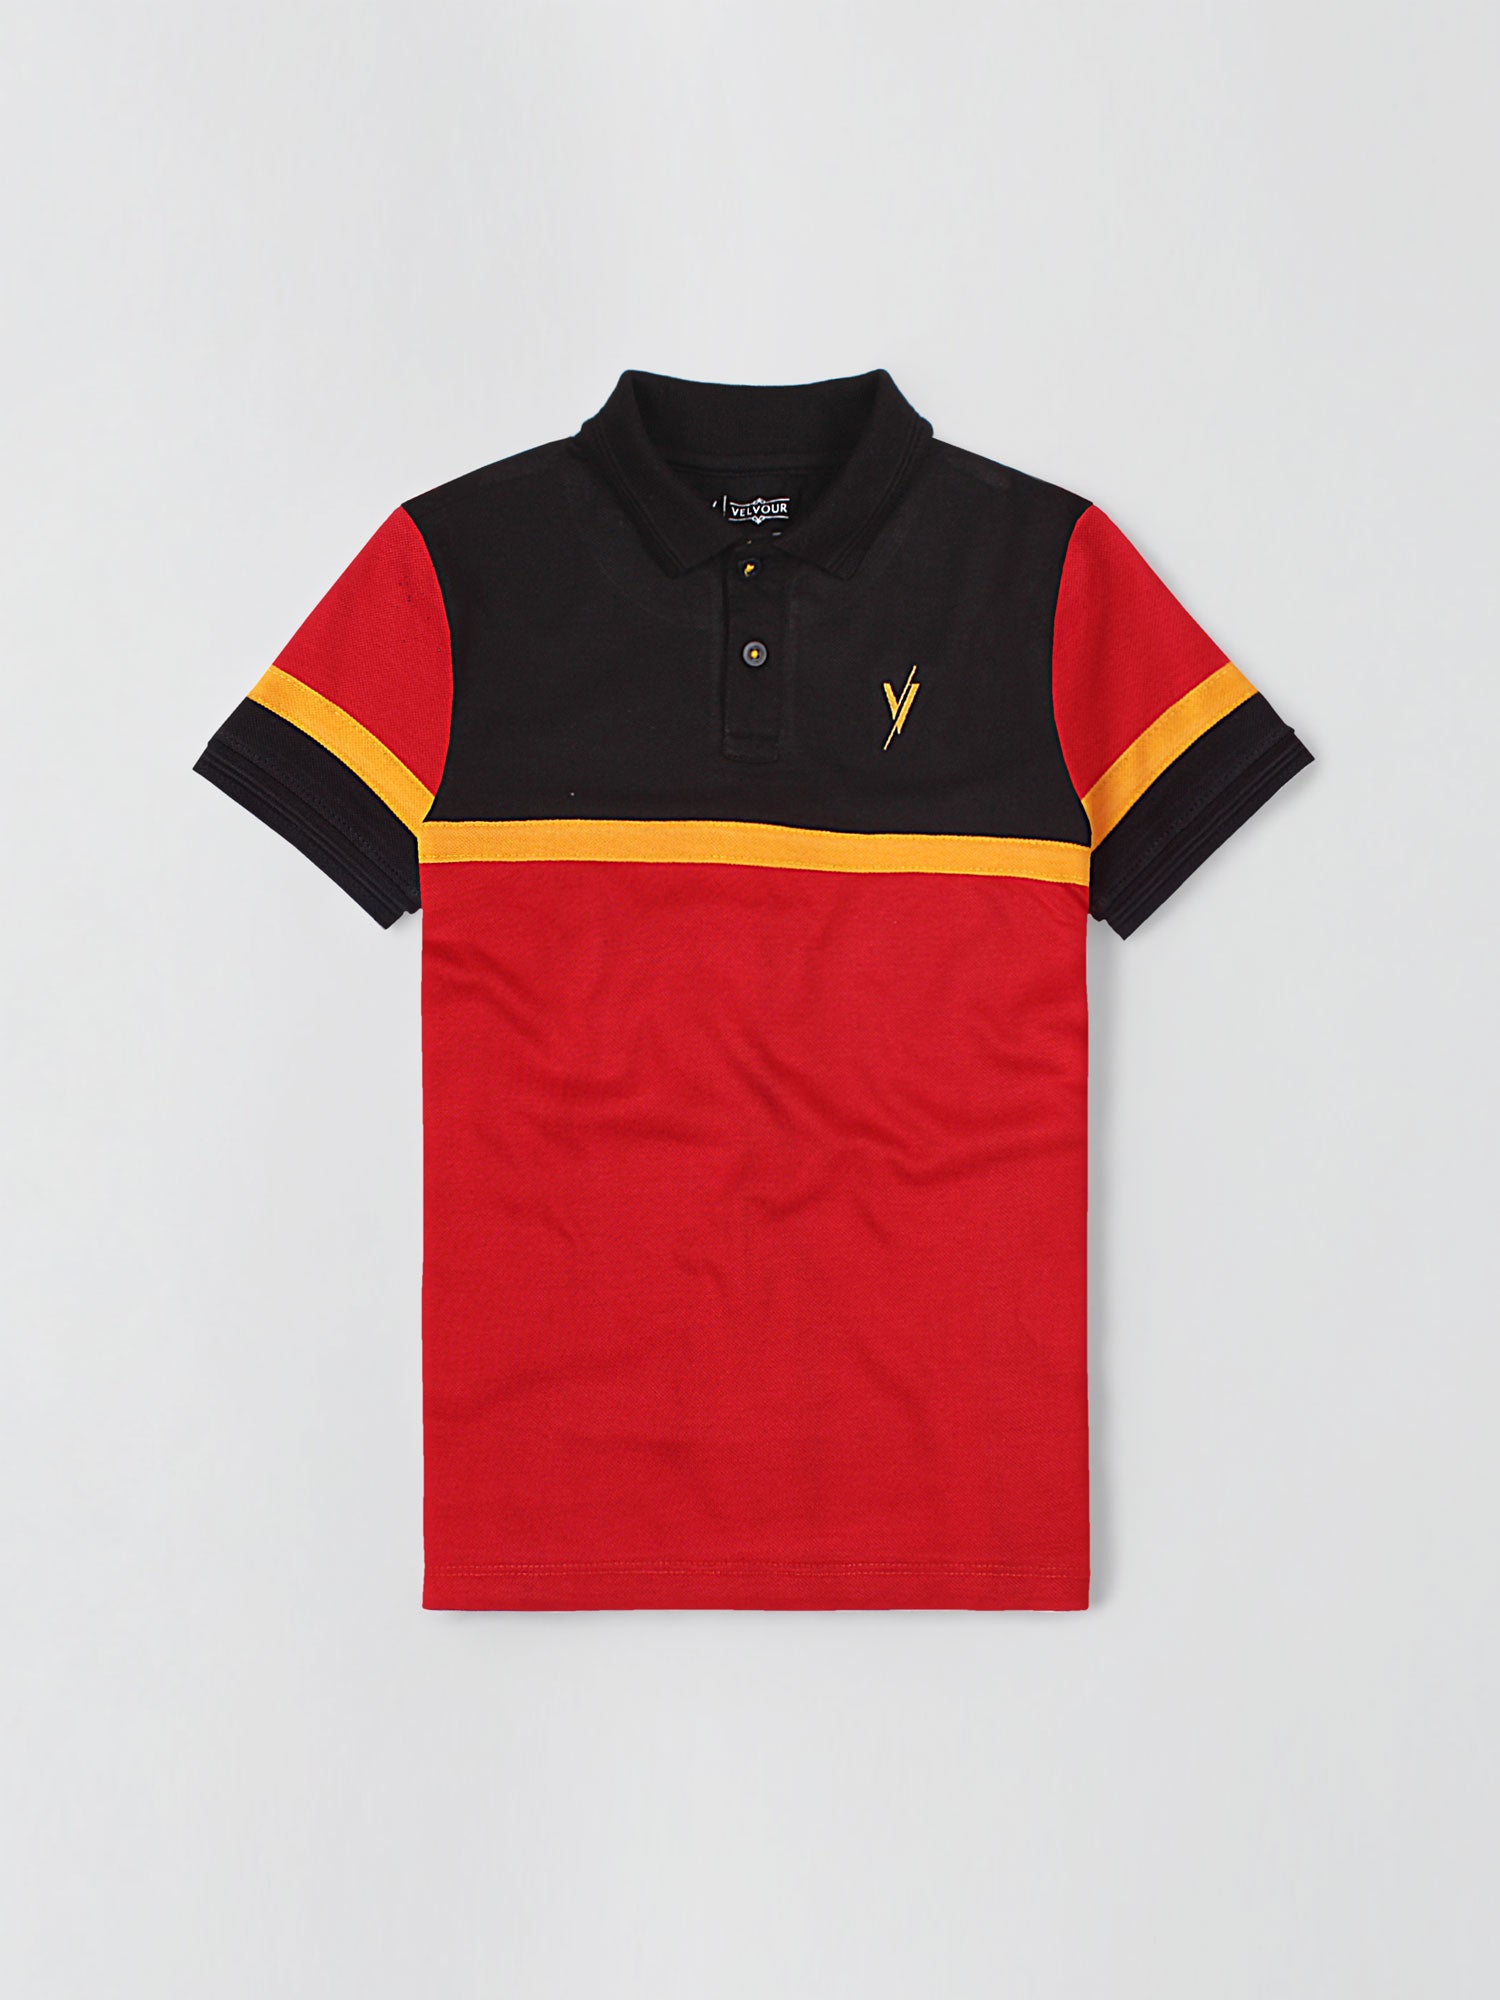 Boys Polo Shirt (Short Sleeve) By Velvour Art# VBP04-D - Velvour Shop